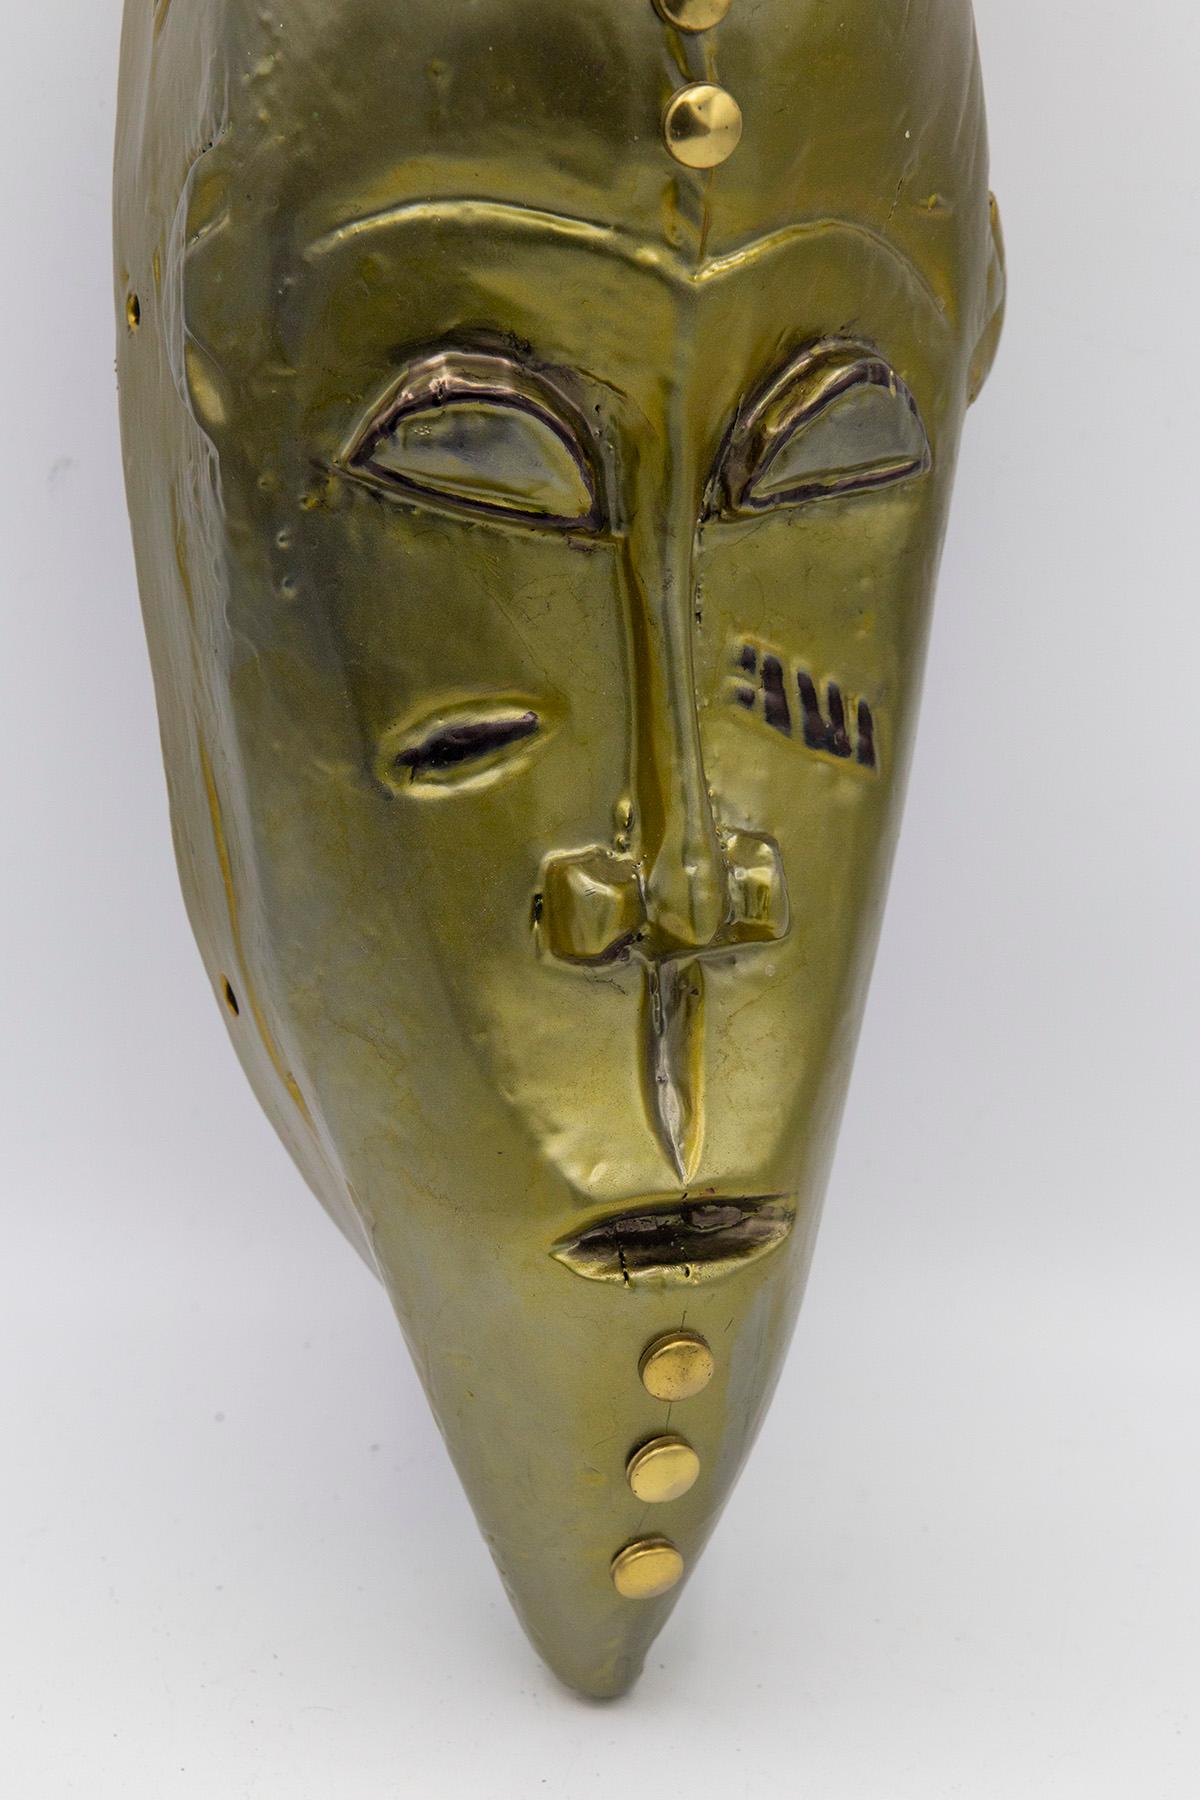 Einzelne afrikanische Maske, geschaffen von dem Künstler Bomber Bax.
Die Maske stammt aus den frühen 1900er Jahren und wurde Ende 2022 von der Künstlerin bearbeitet und bemalt.
Der Künstler verwendete spezielle Metallic-Farben, um einen Mundeffekt